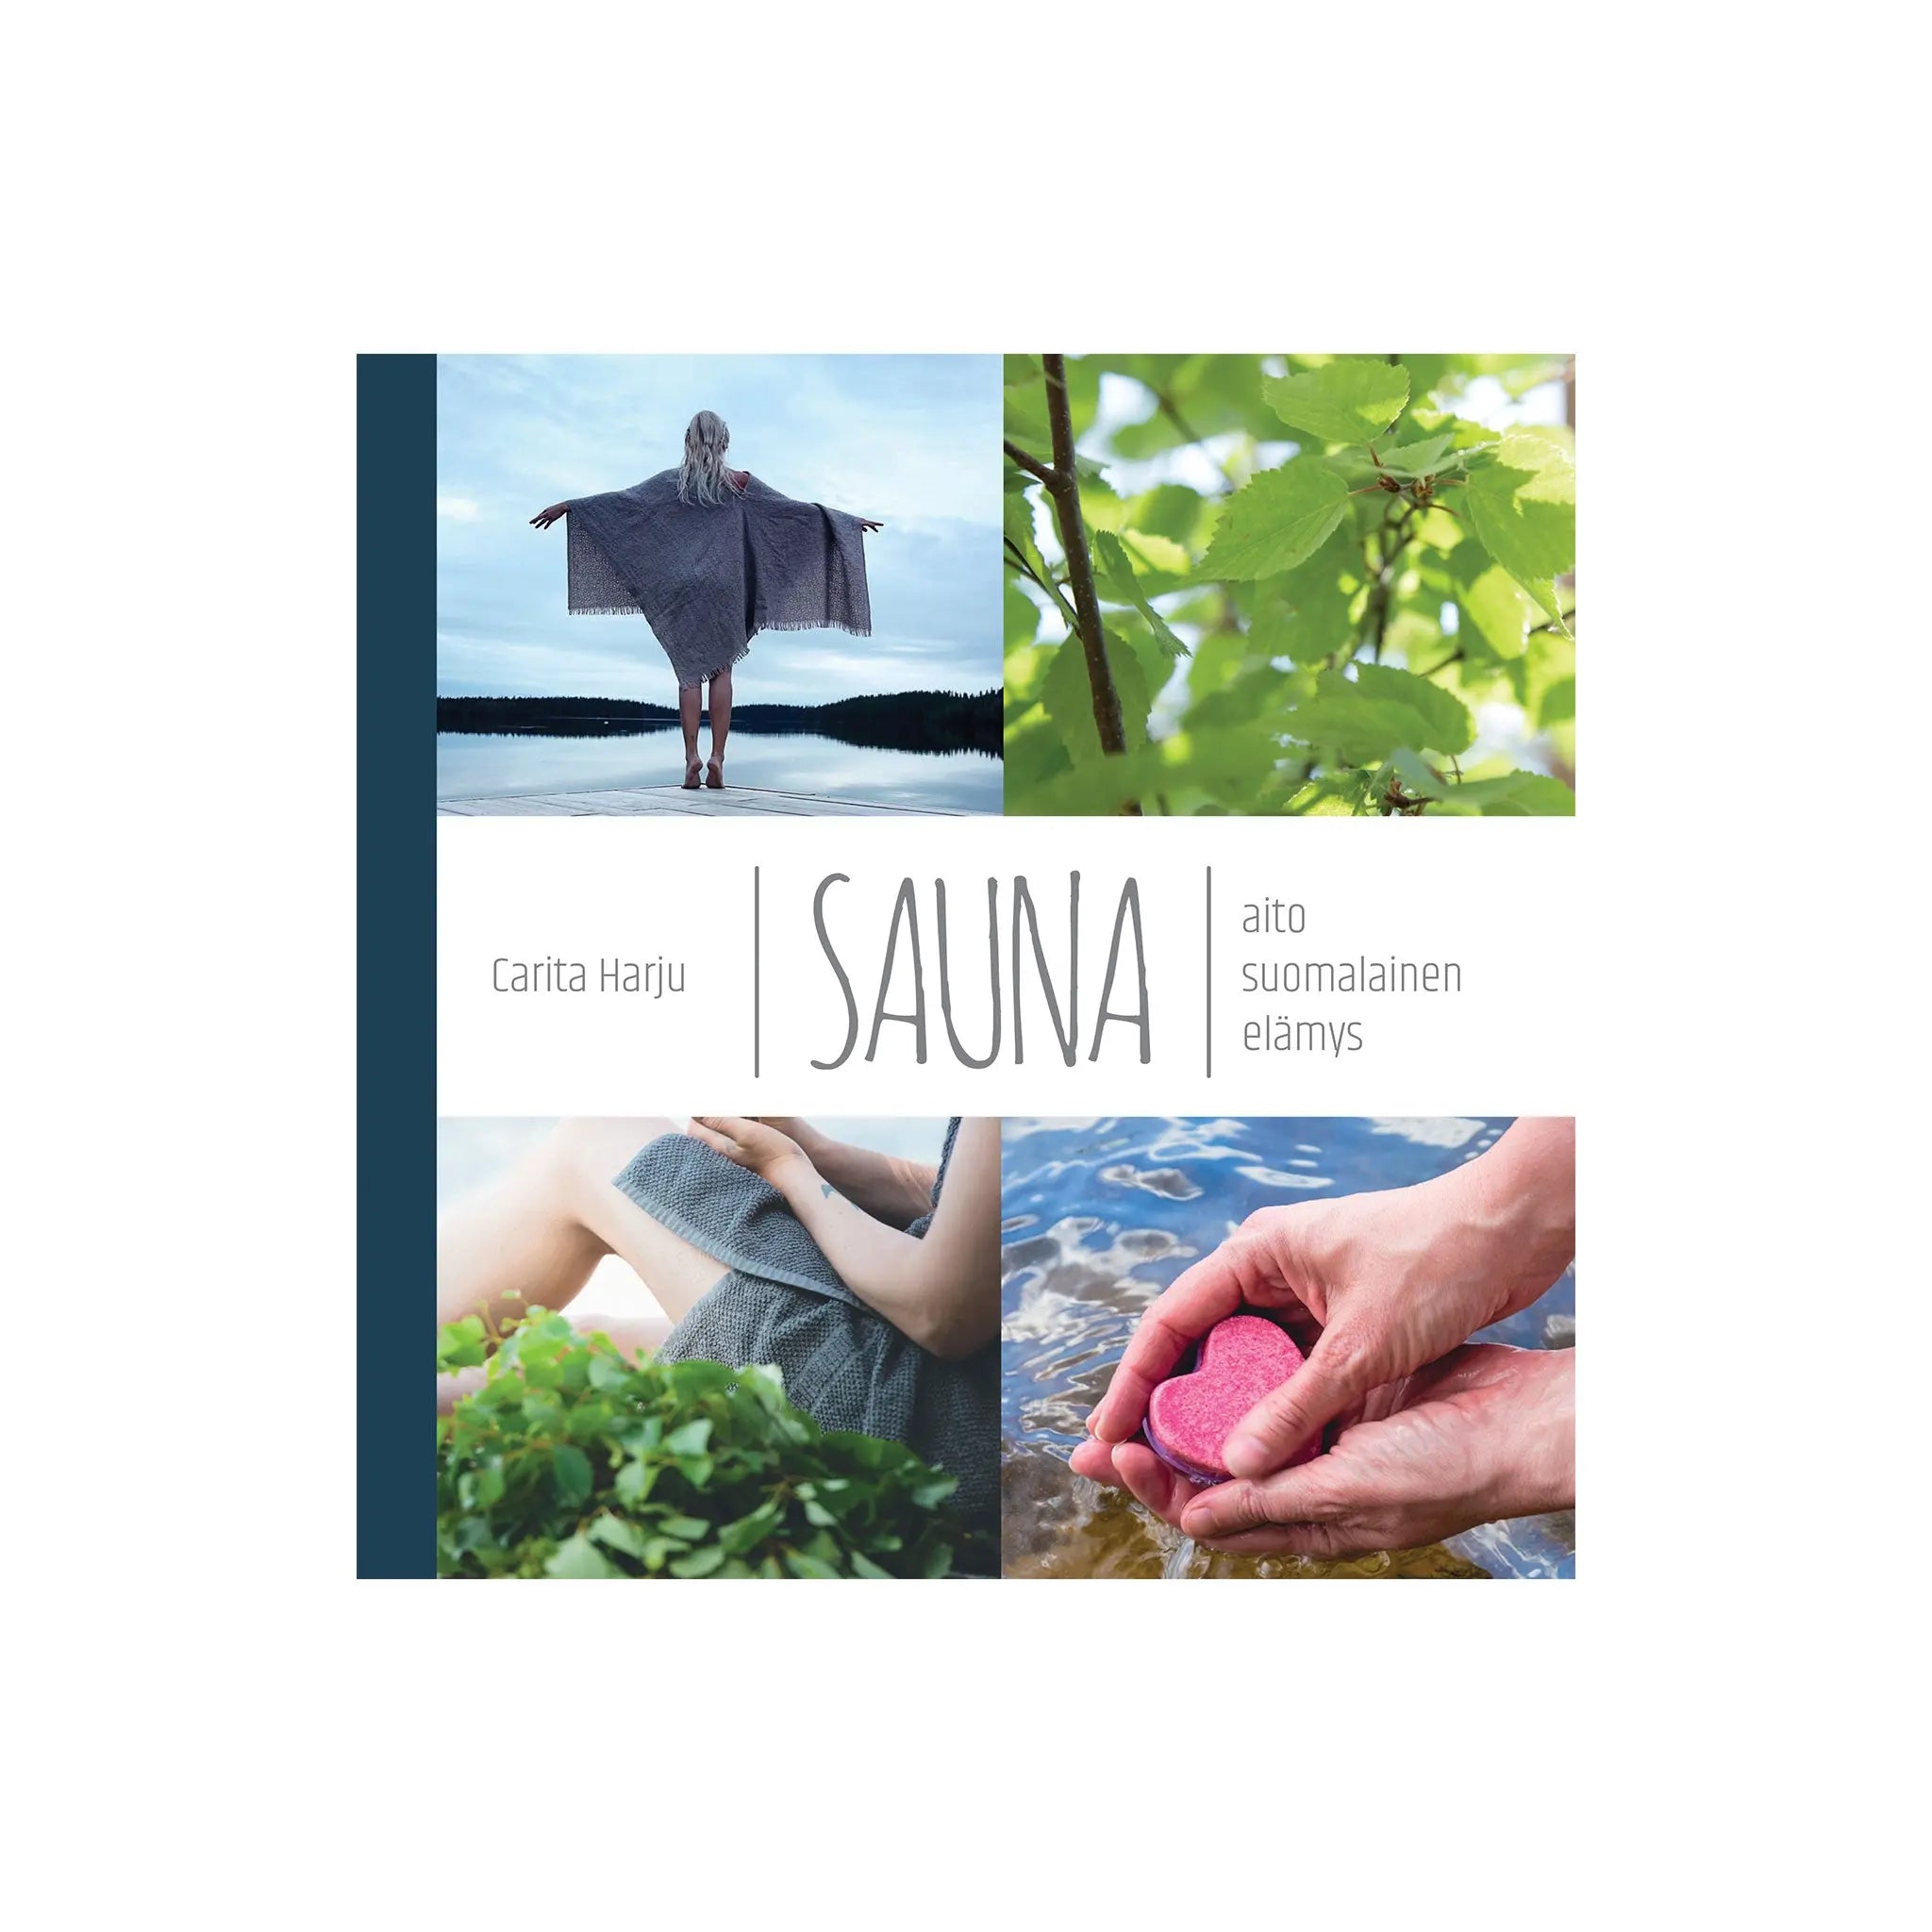 Sauna - The Way of Finnish Life | Book Book | Finnmark Sauna